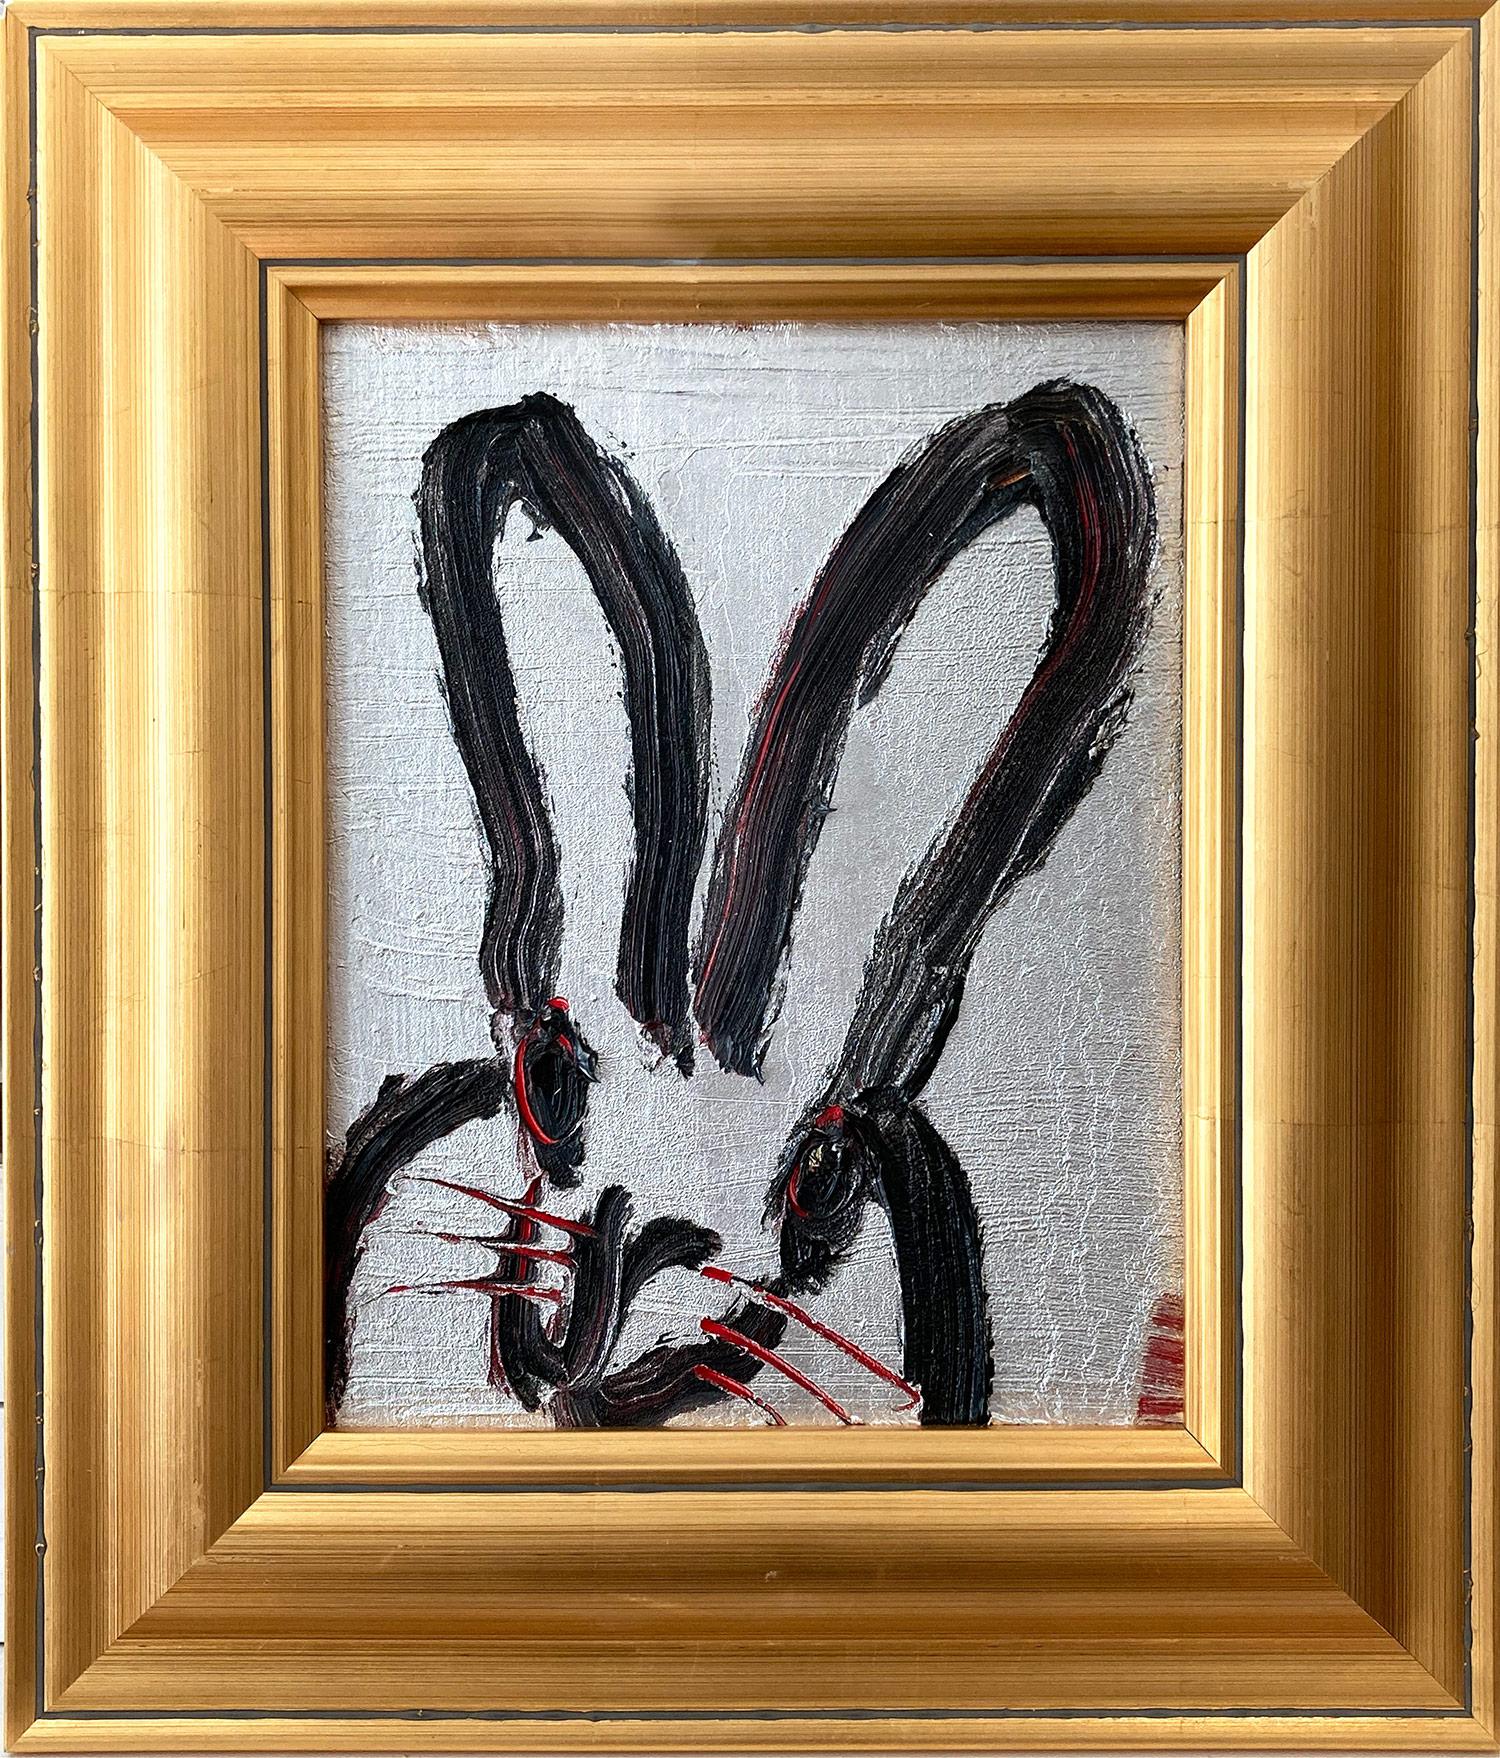 Abstract Painting Hunt Slonem - Peinture à l'huile sur bois « Me », bouleau noir sur fond argenté avec accents rouges